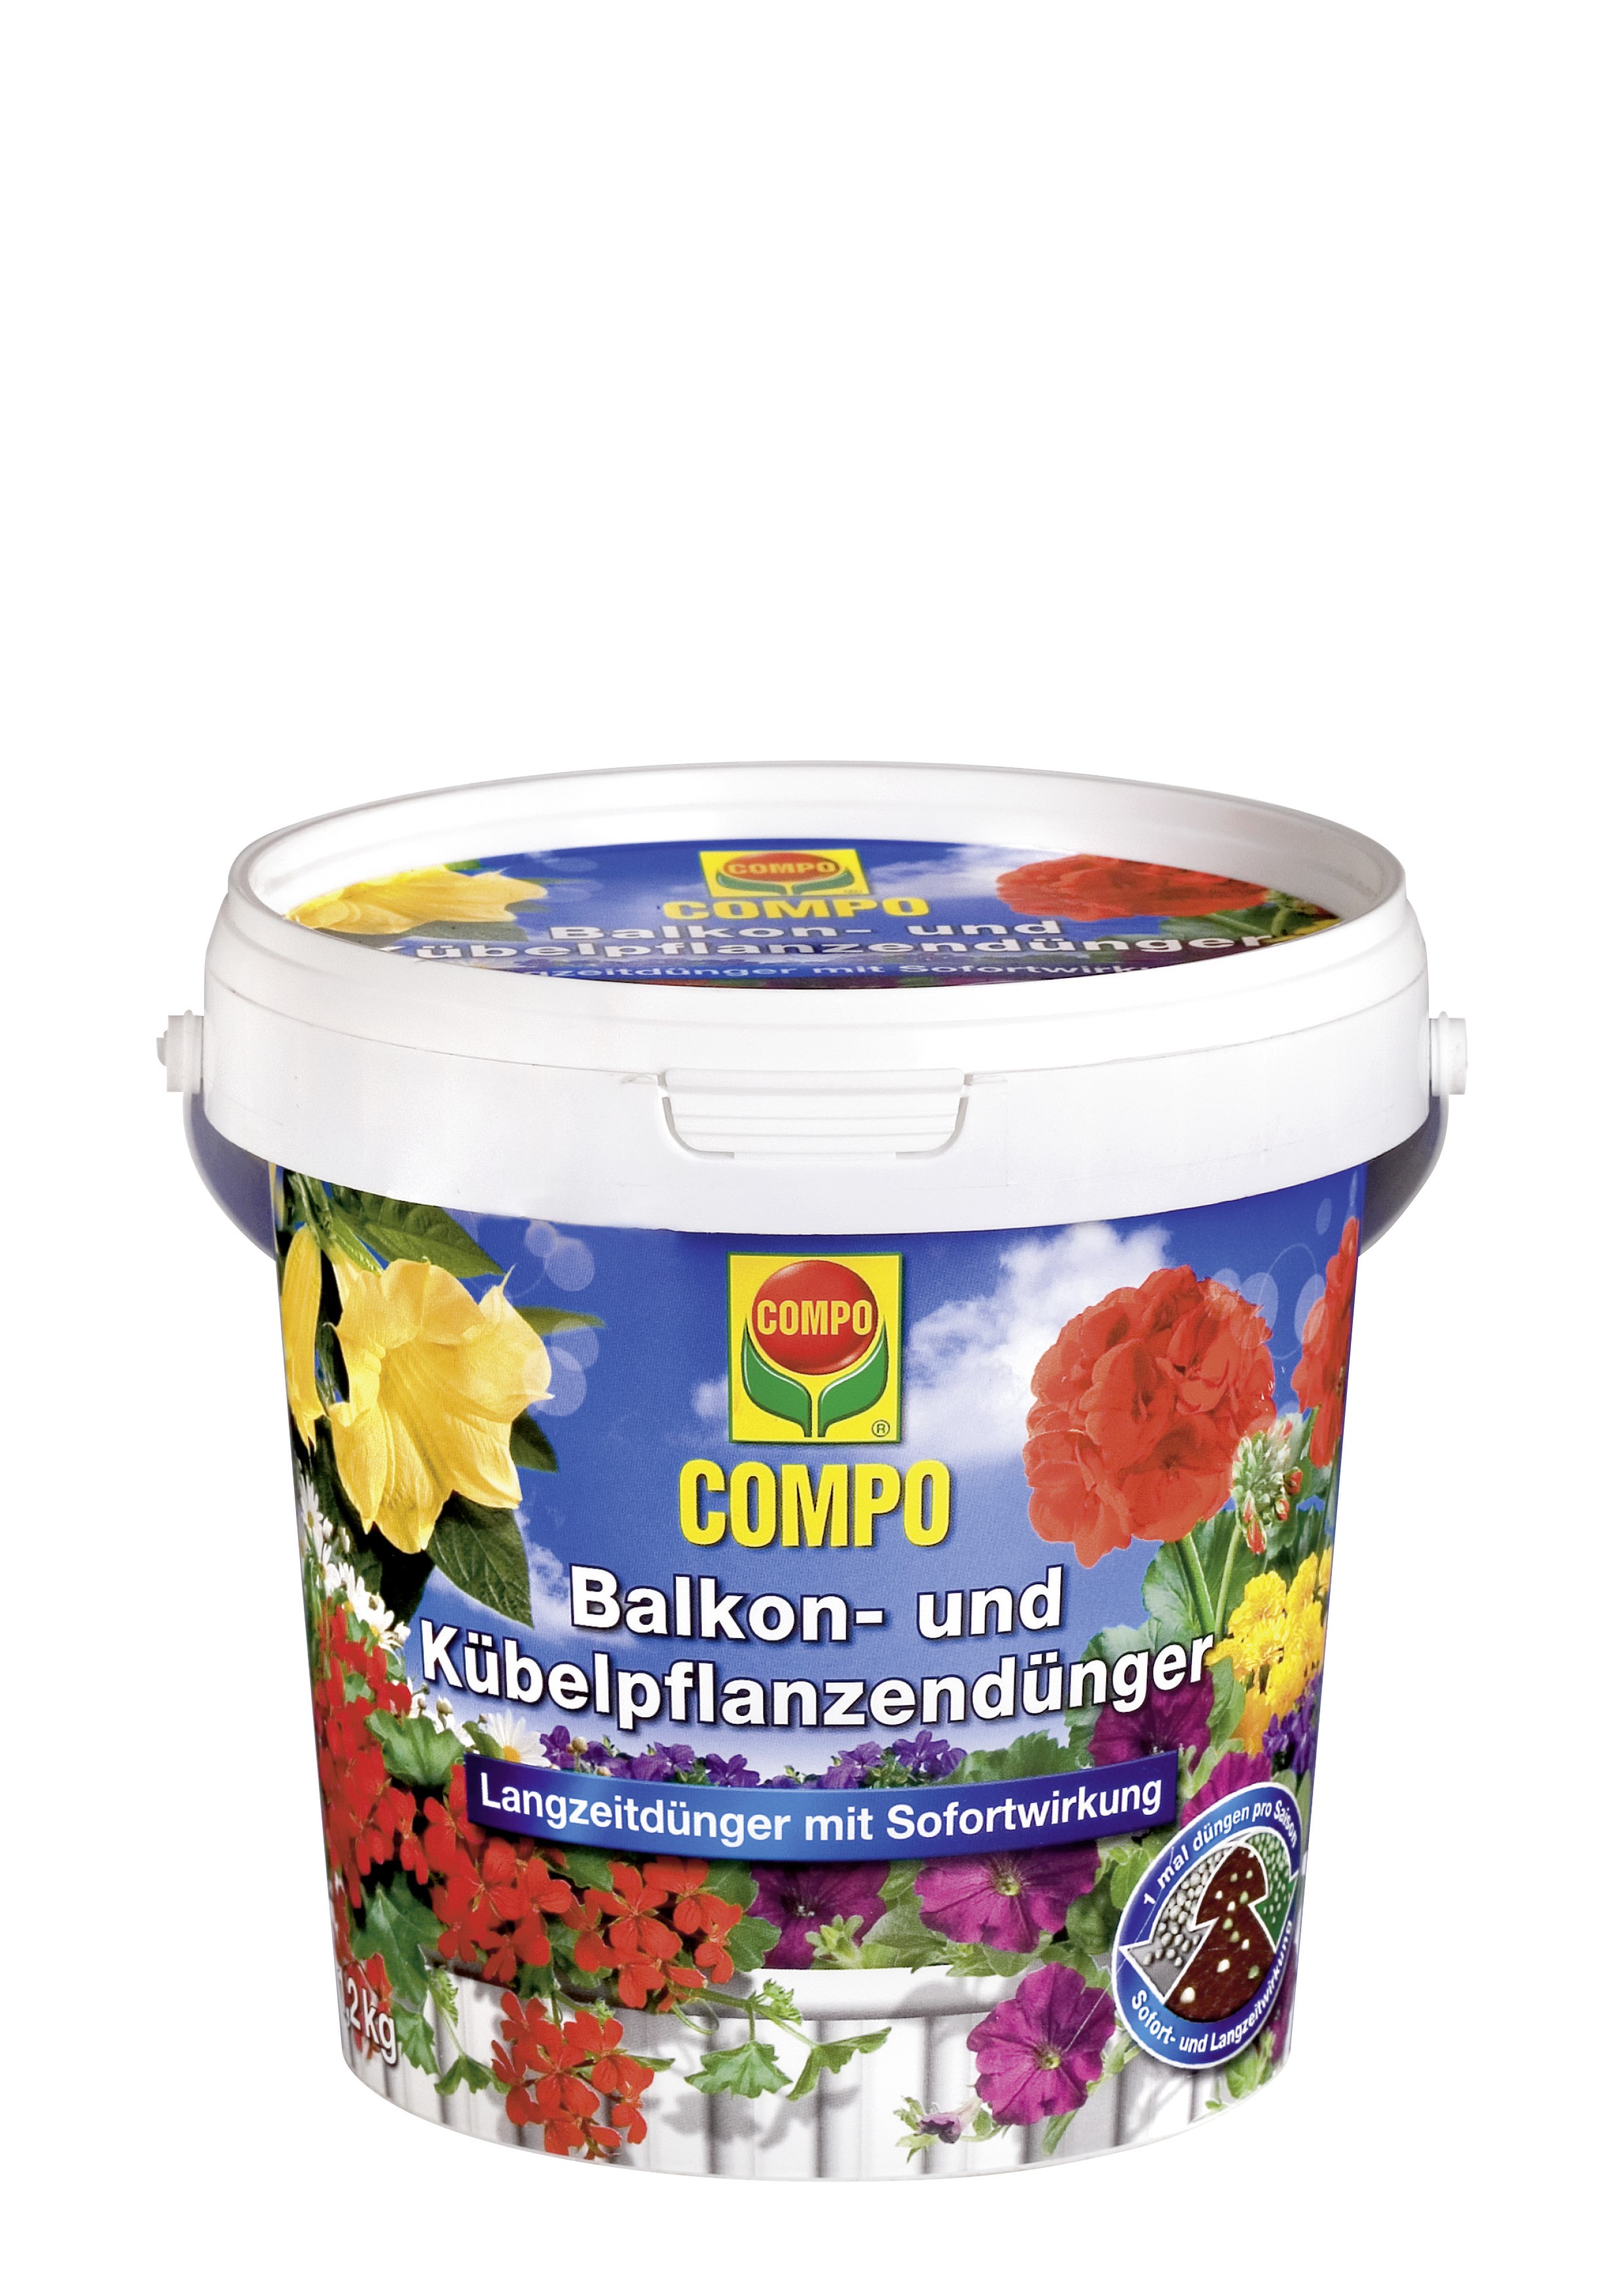 COMPO Balkon- und Kübelpflanzendünger 1,2 kg